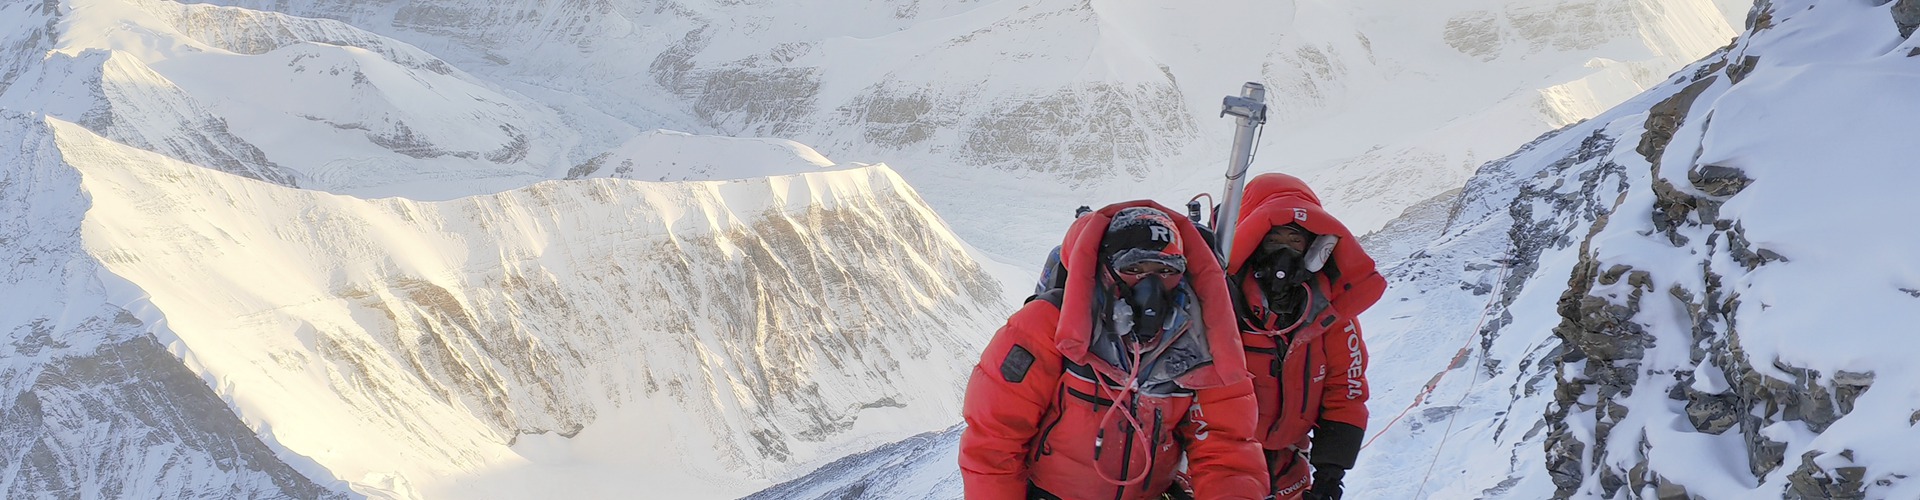 英国登山者创造外国人登顶珠峰纪录